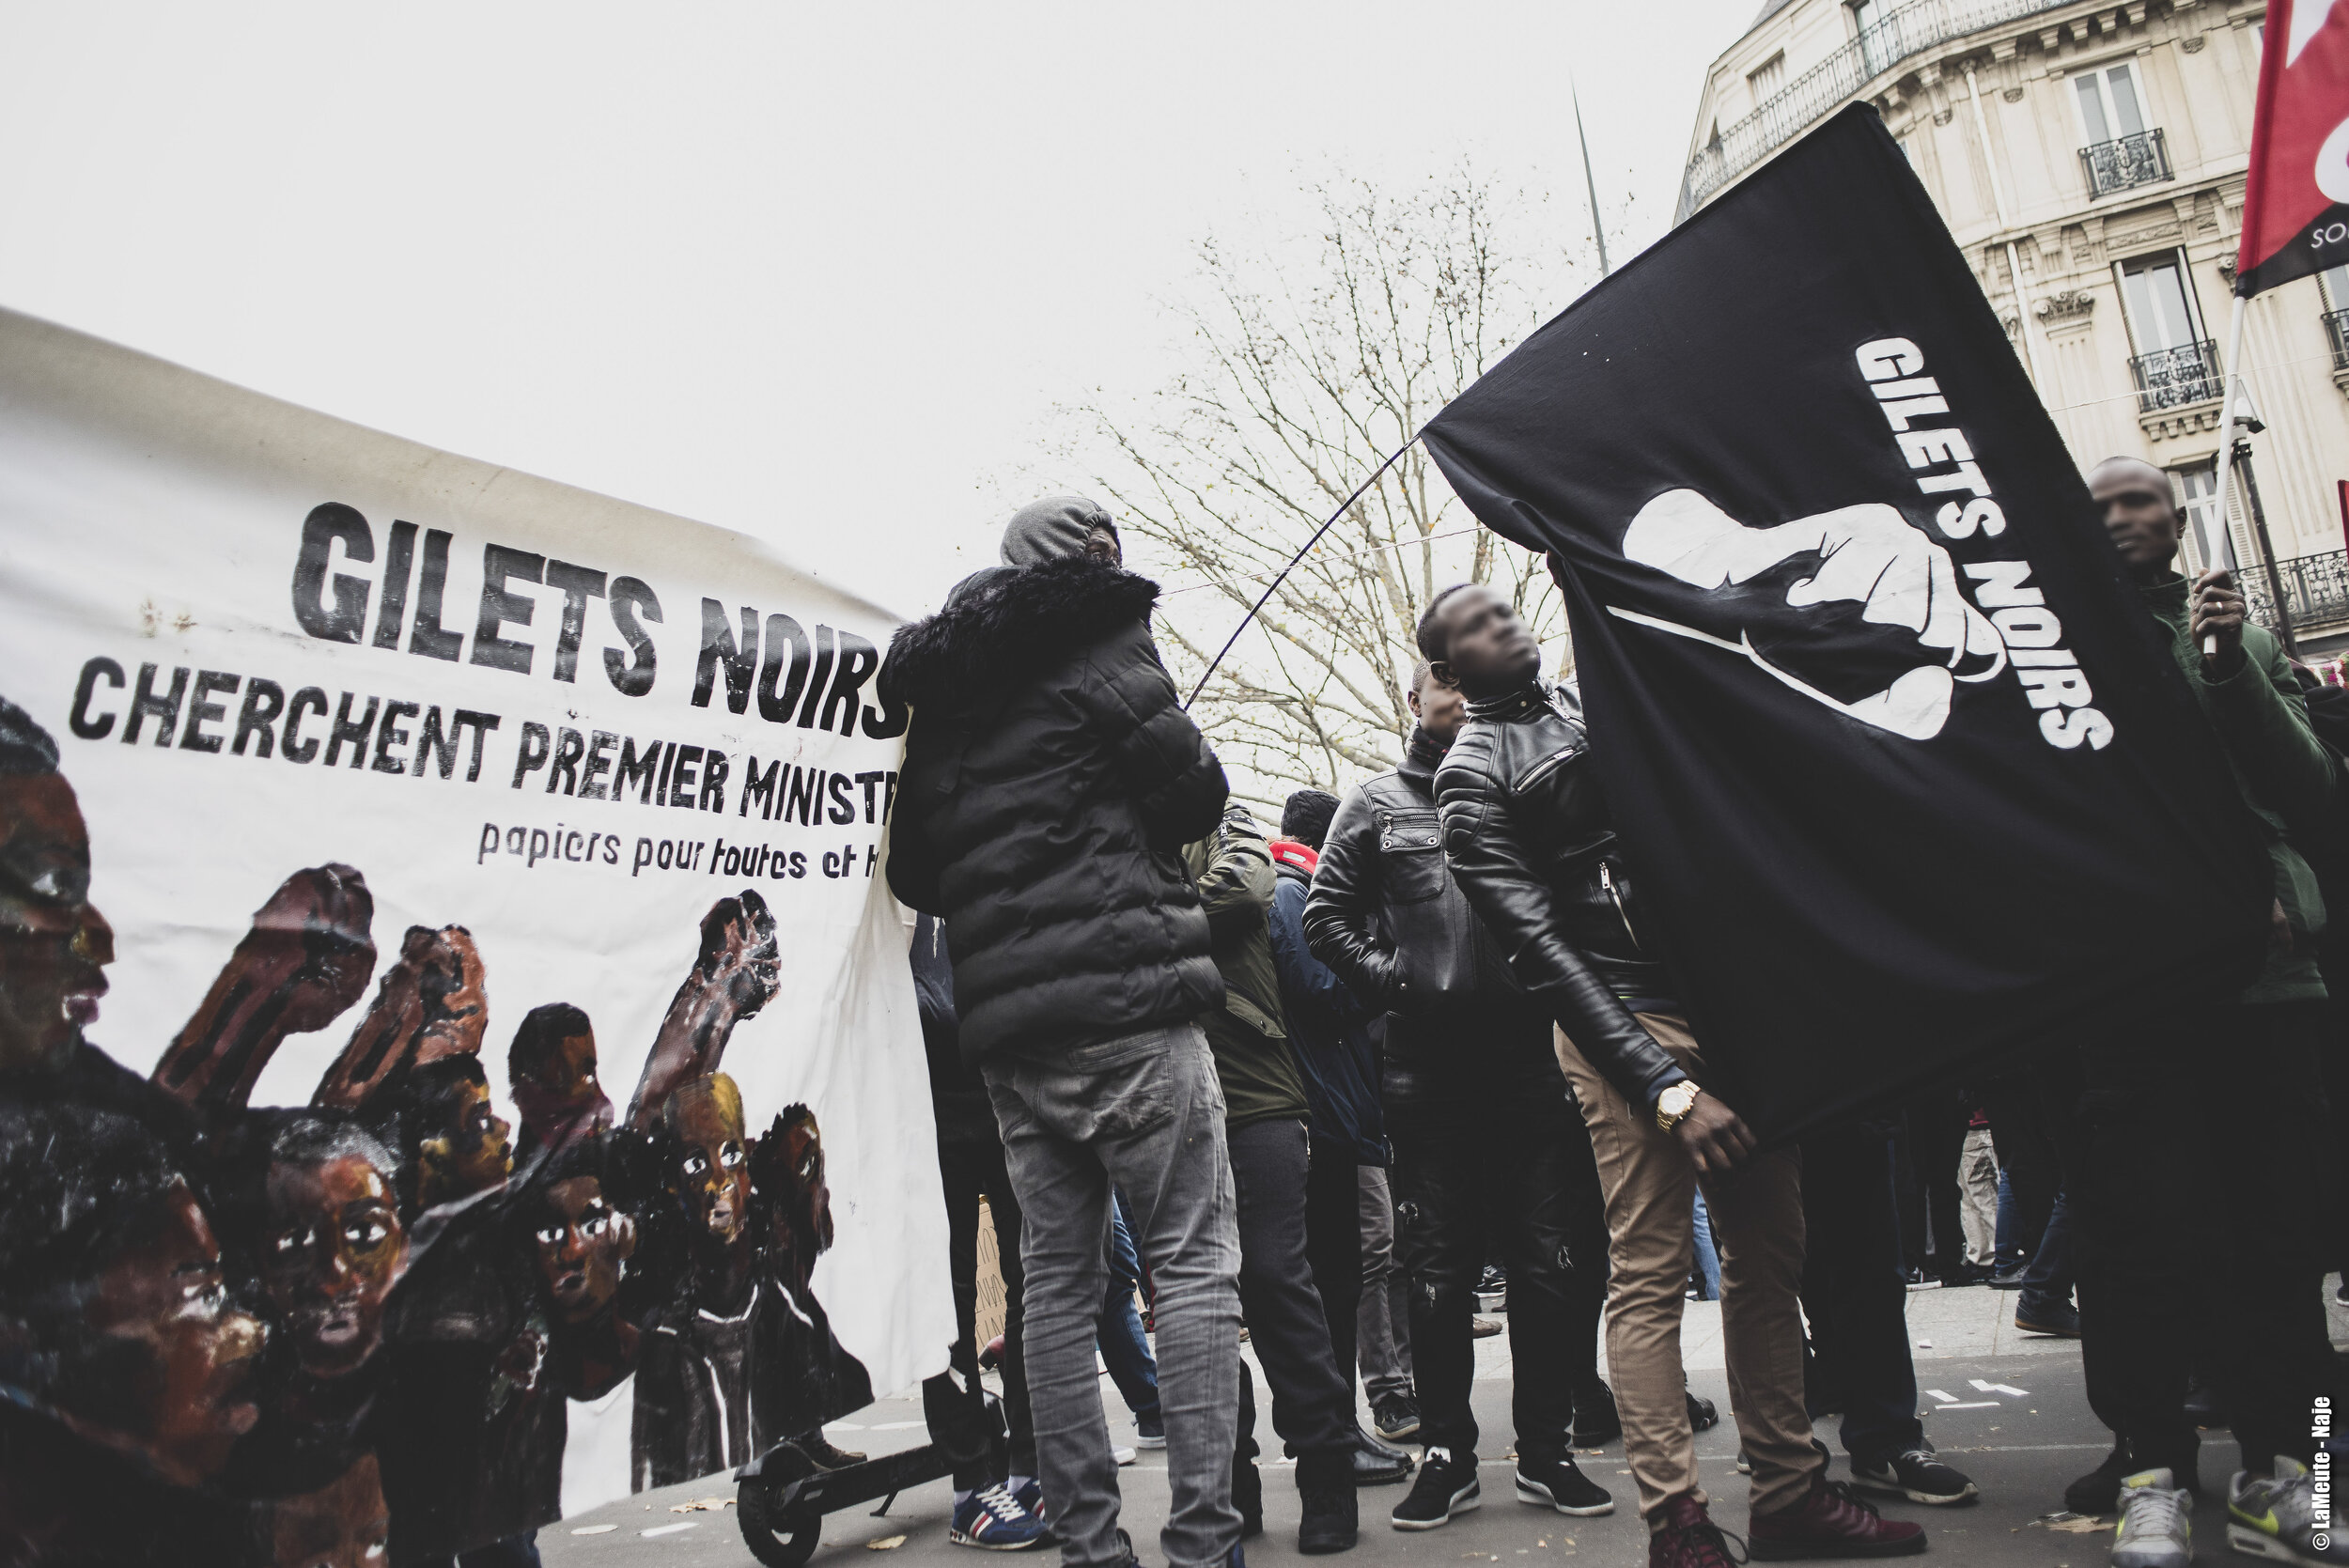   Un cortège des Gilets Noirs était présent pour la première manifestation organisée depuis le lancement de la Grève Générale, le 05 décembre 2019.  ©LaMeute -Naje 